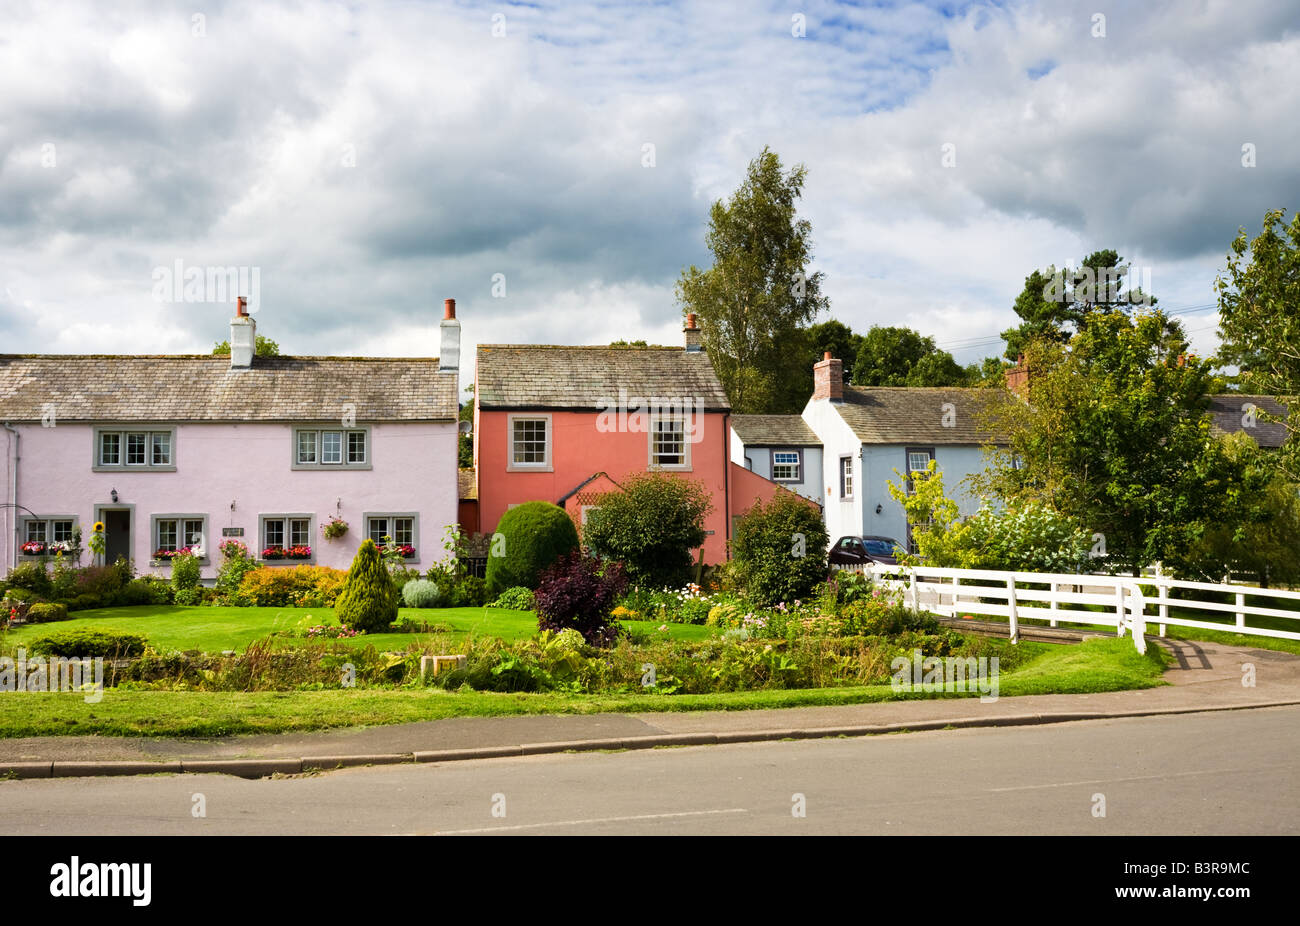 Piuttosto dipinte di casette a schiera nel villaggio di Caldbeck, nel distretto del lago, England, Regno Unito Foto Stock